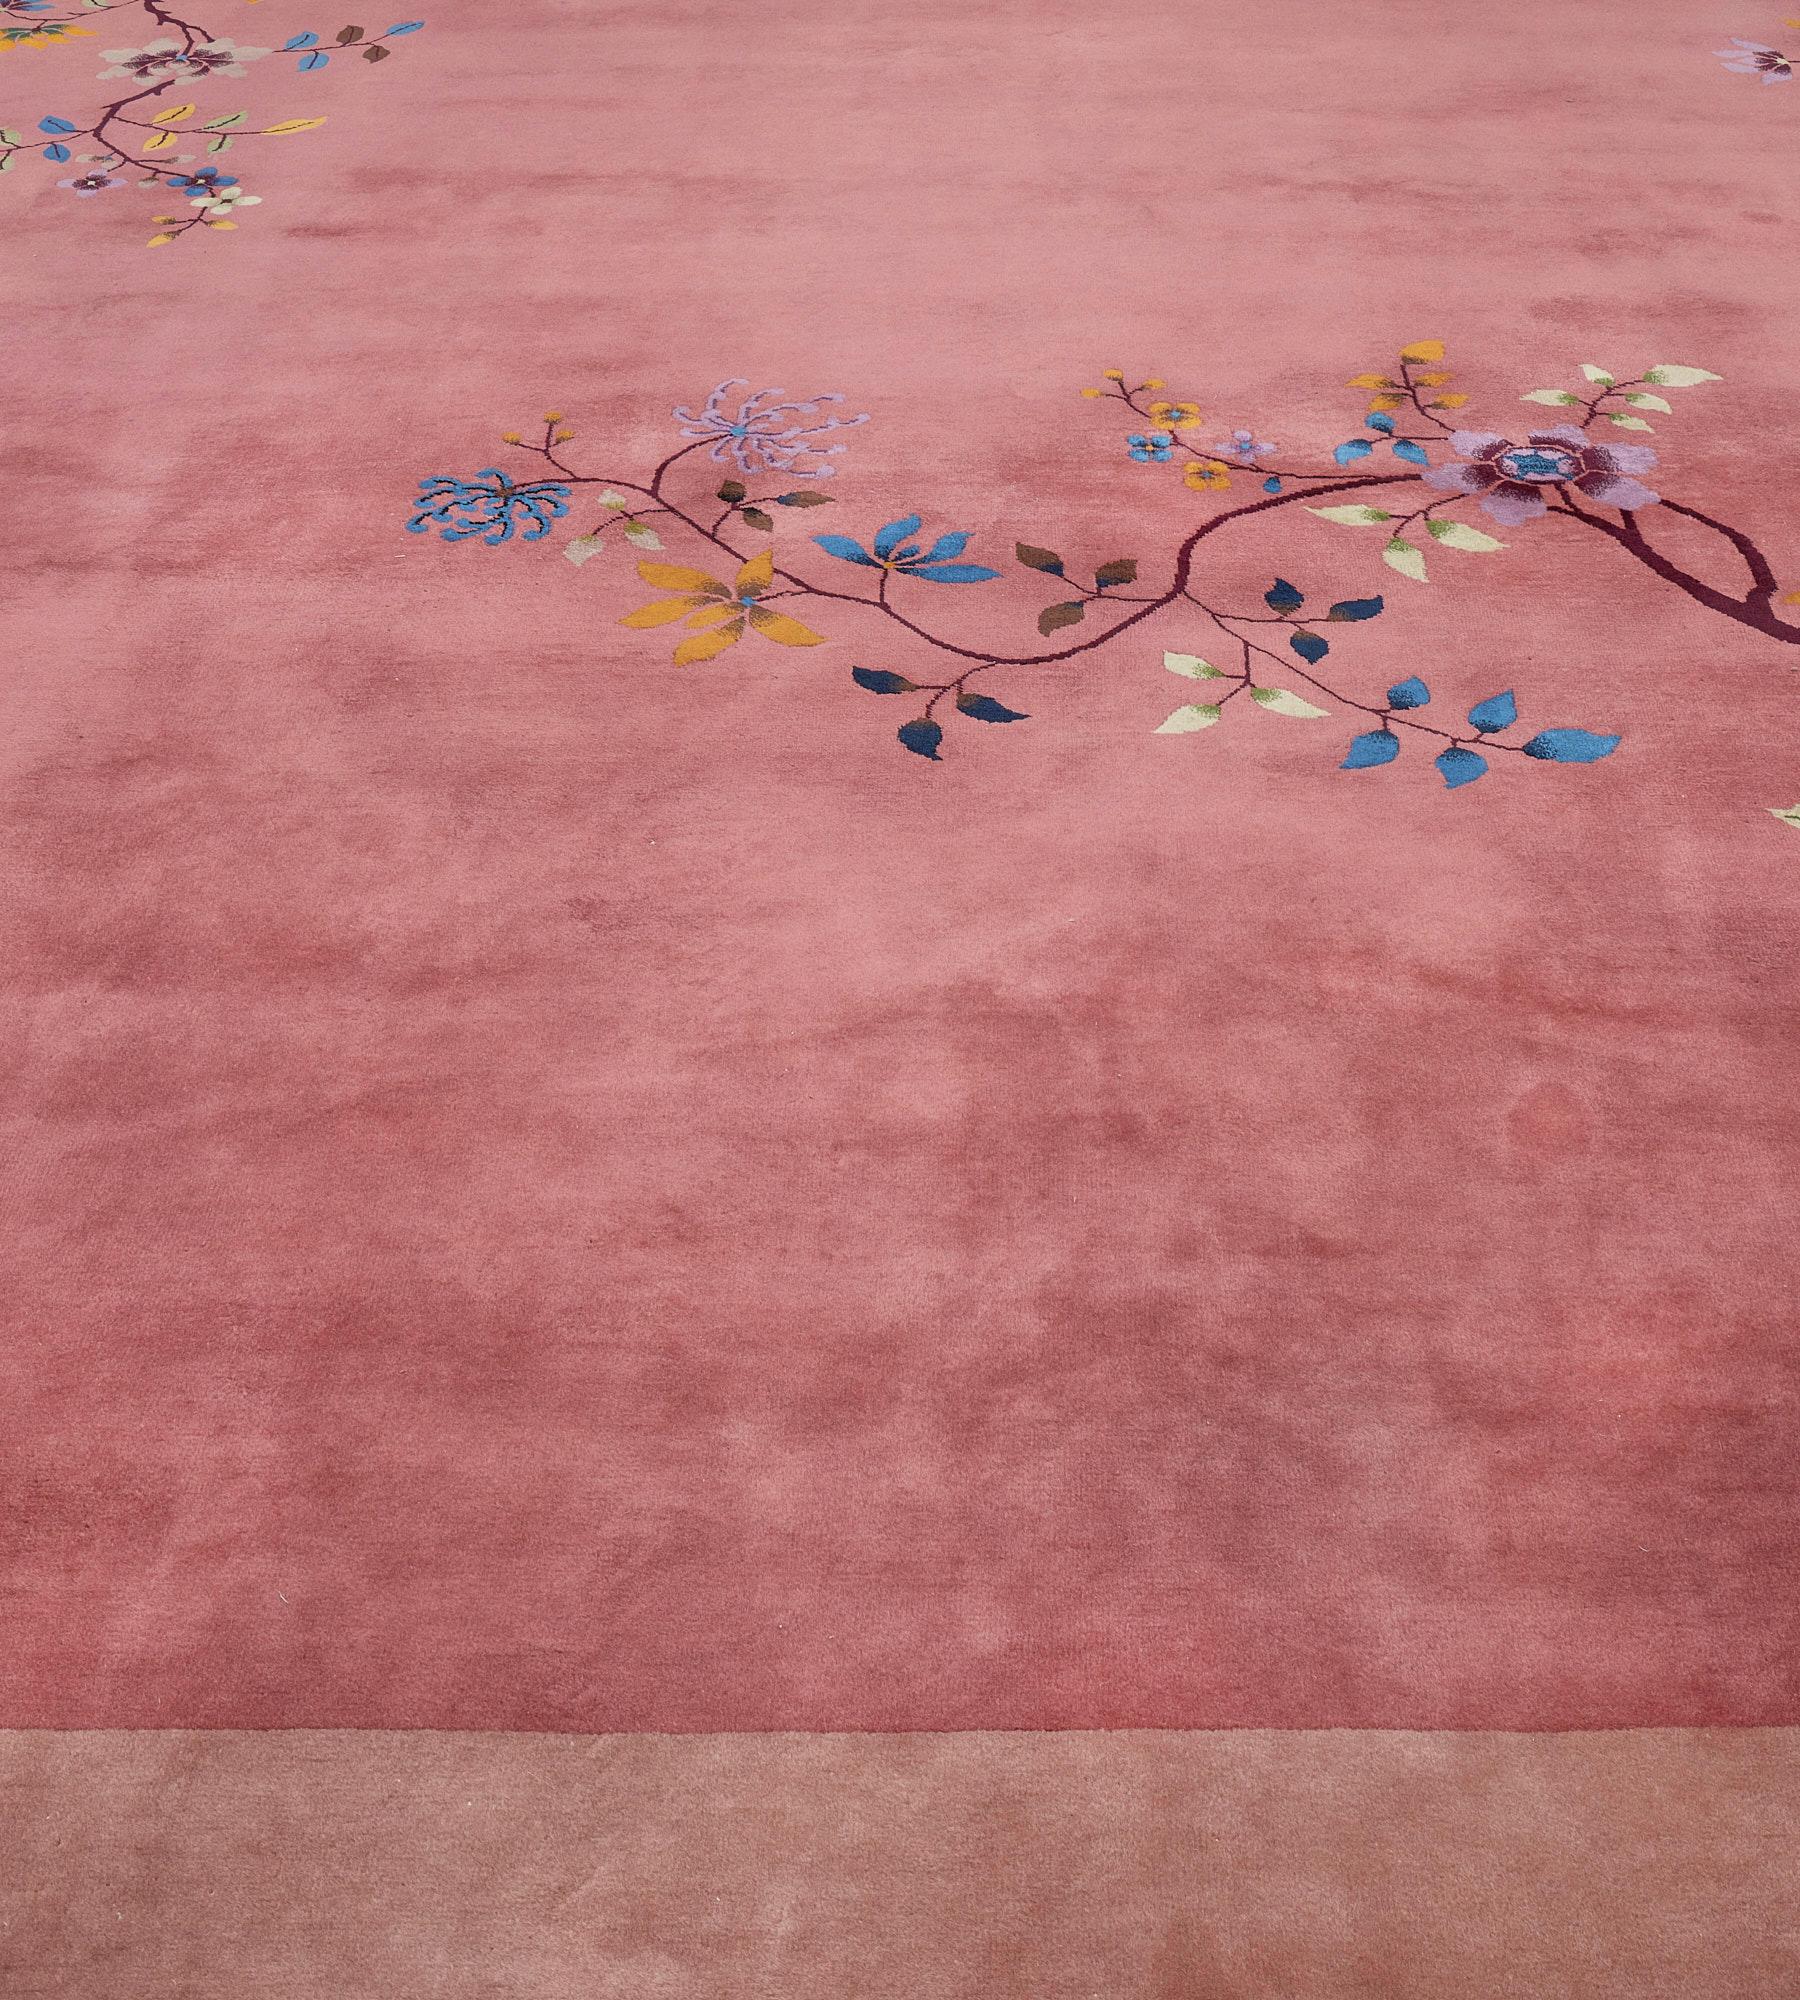 Cet ancien tapis chinois de Pékin, datant de 1930, présente un champ rose poussiéreux avec de délicates tiges fleuries à chaque coin et des symboles de bon augure suspendus aux branches, dans une large bordure rose pâle avec des formations rocheuses